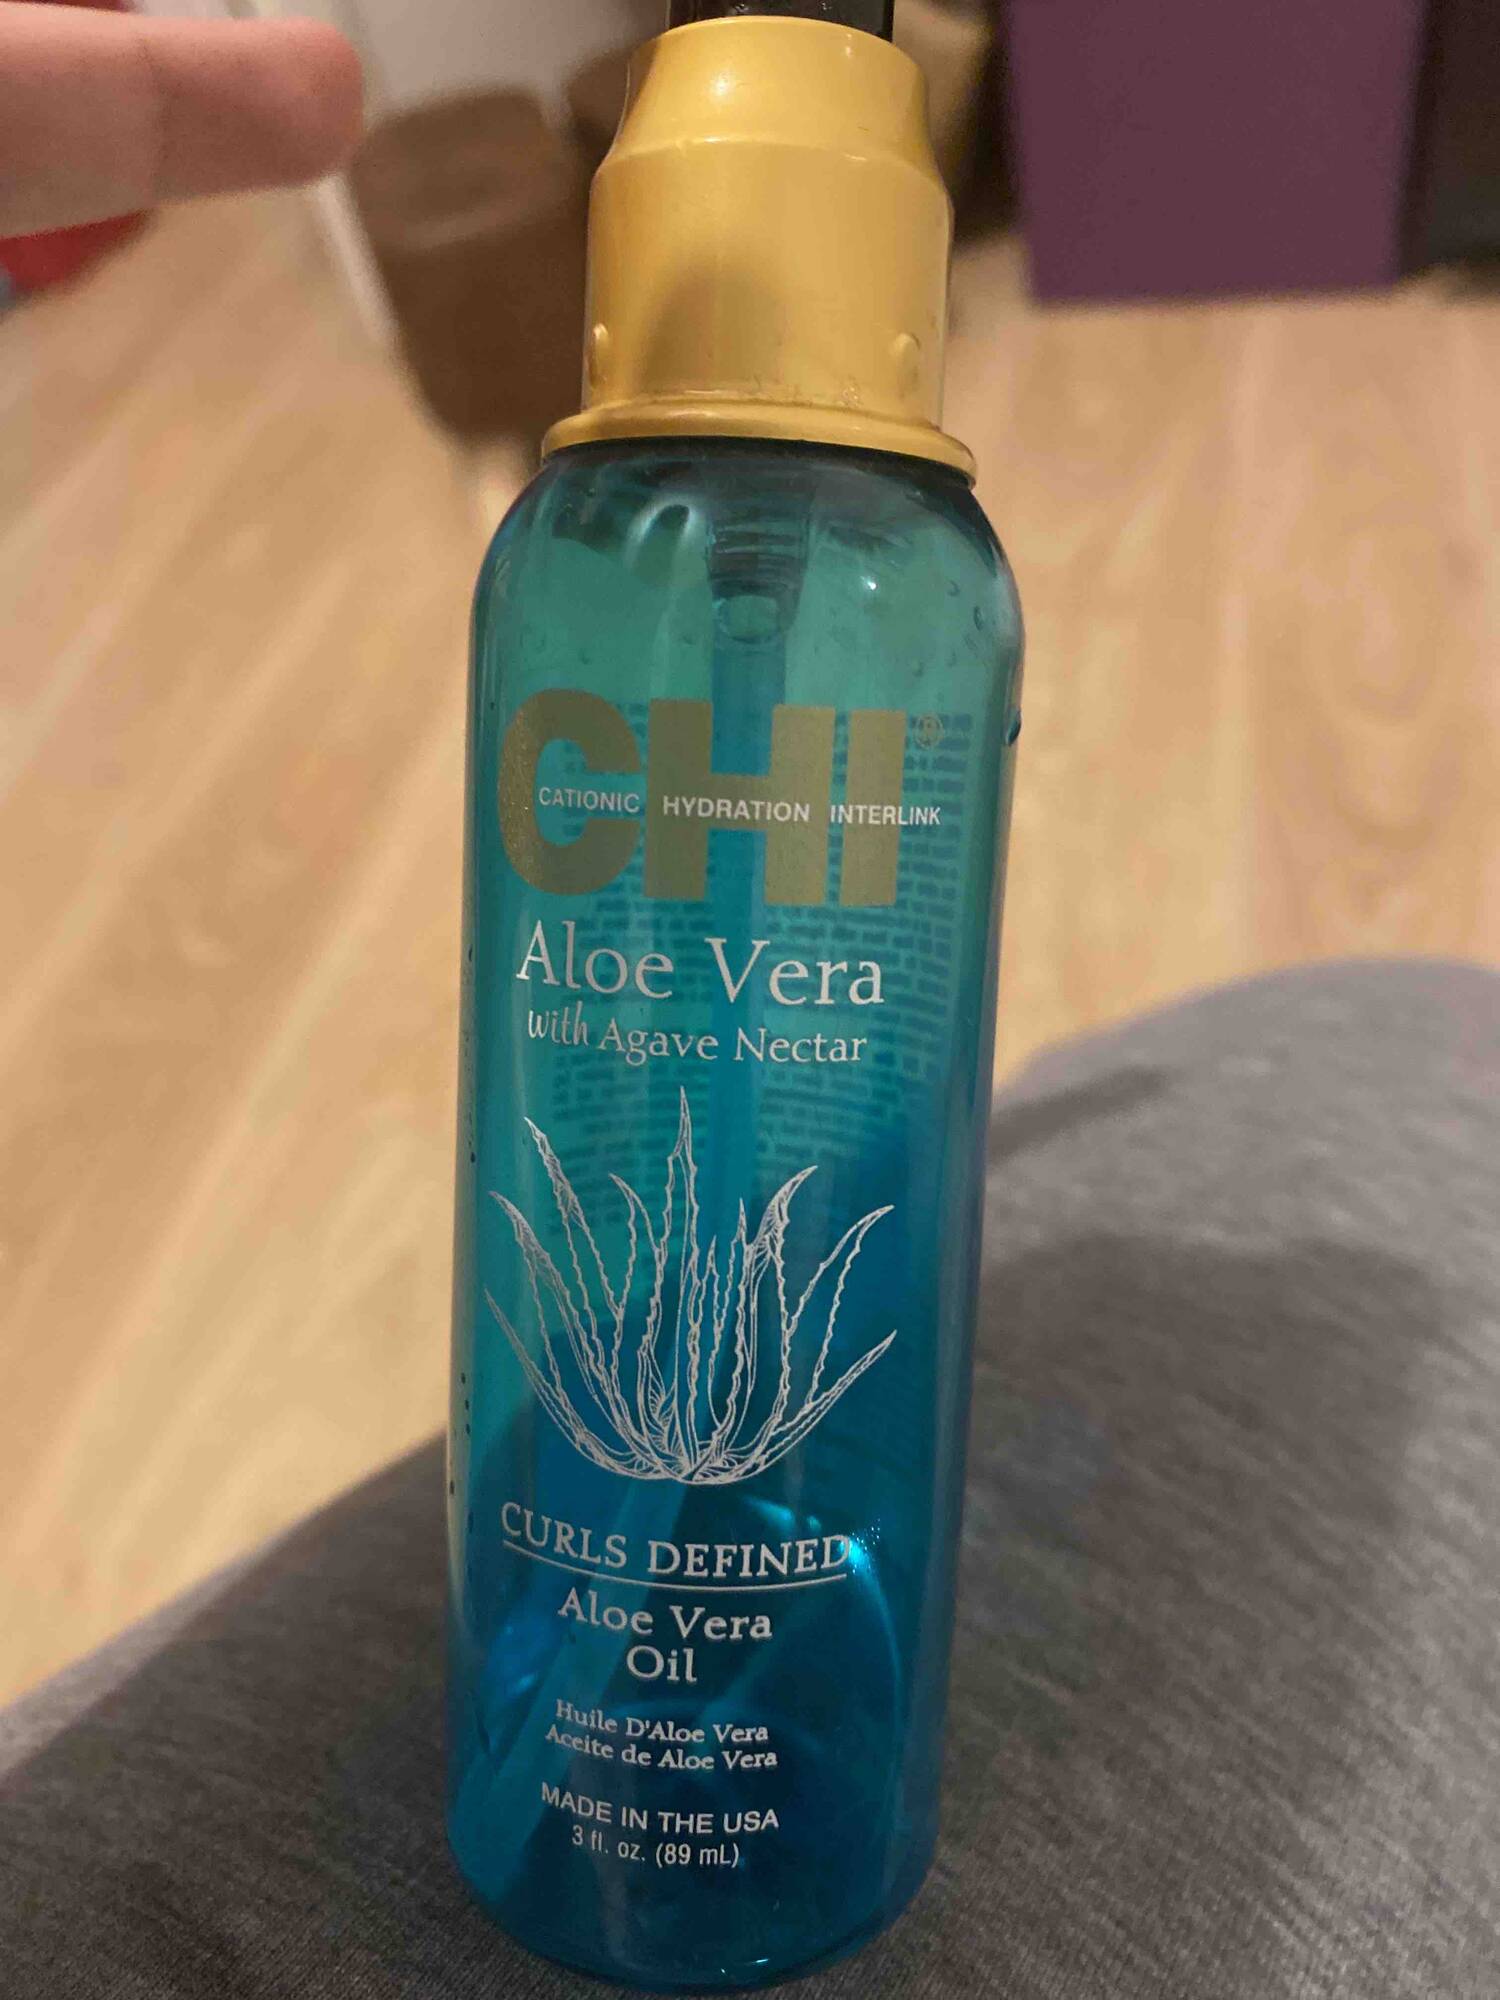 CHI - Aloe vera with agave nectar - Aloe vera oil